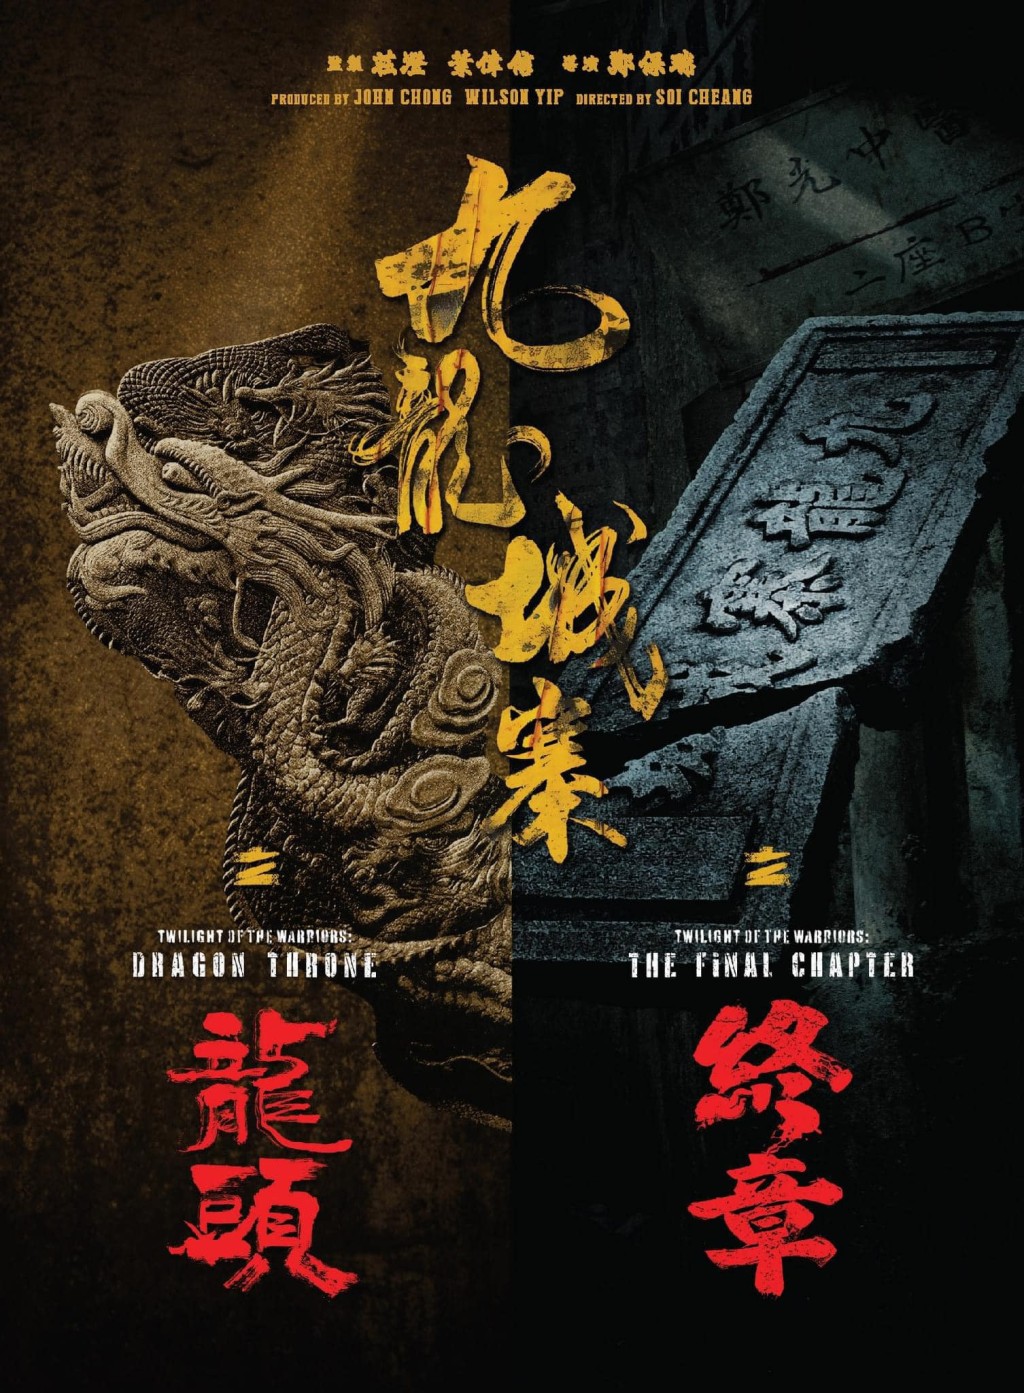 《龙头》相信是《围城》的前传，而《终章》则会是后续故事。